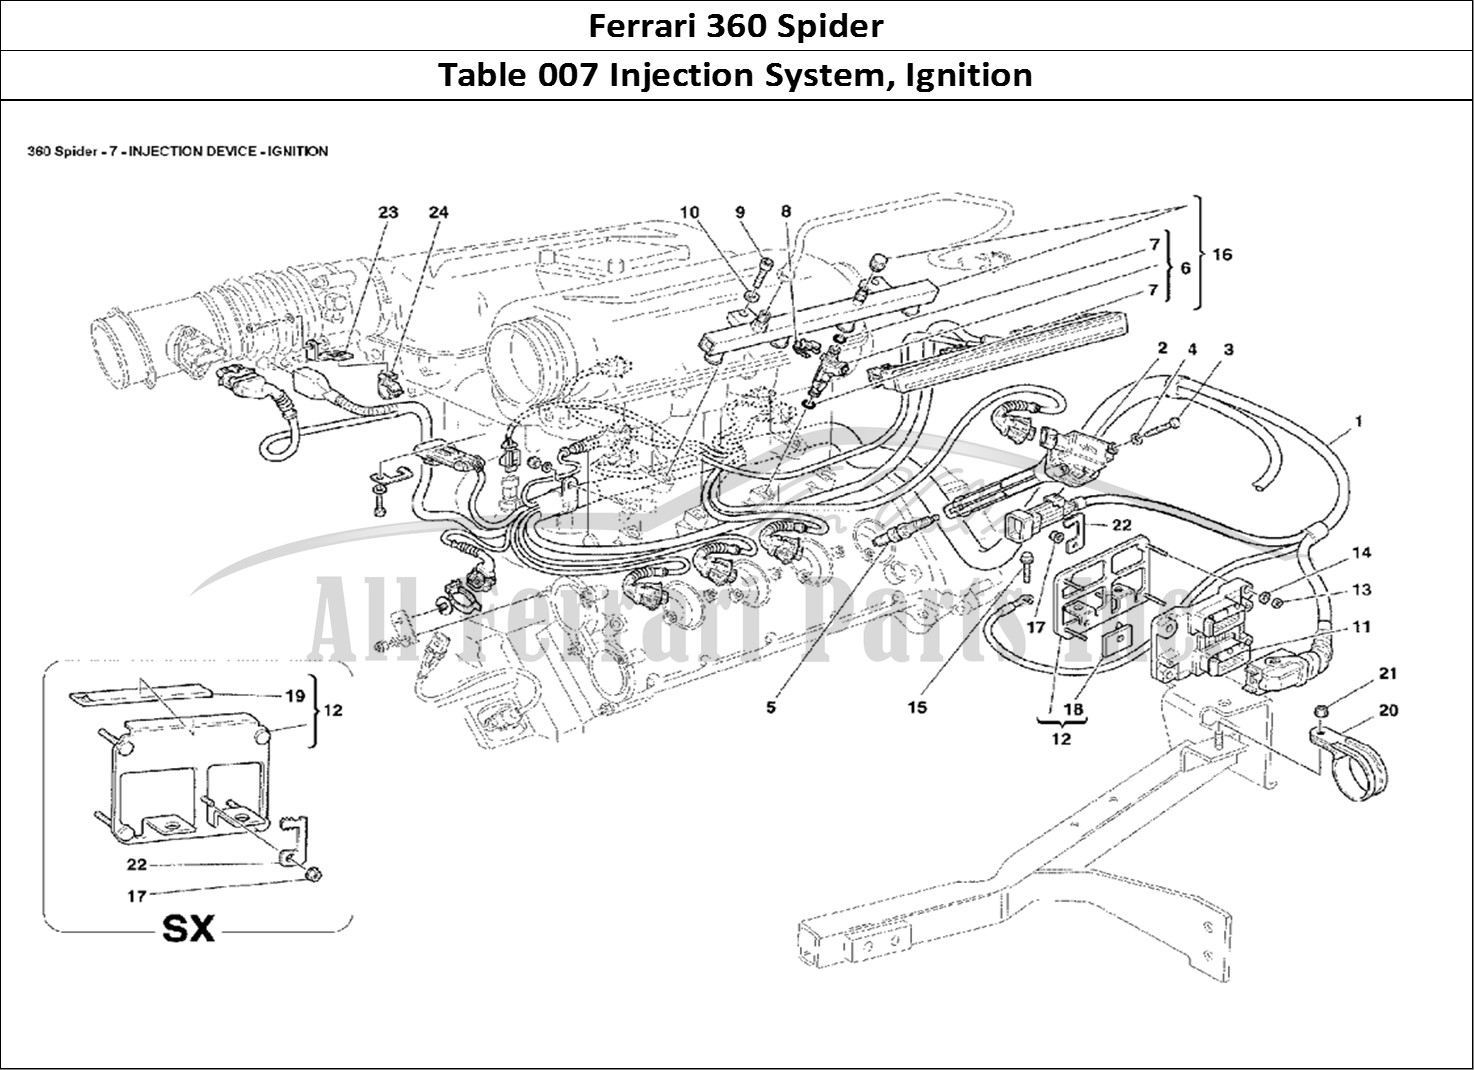 Ferrari Parts Ferrari 360 Spider Page 007 Injection Device - Igniti